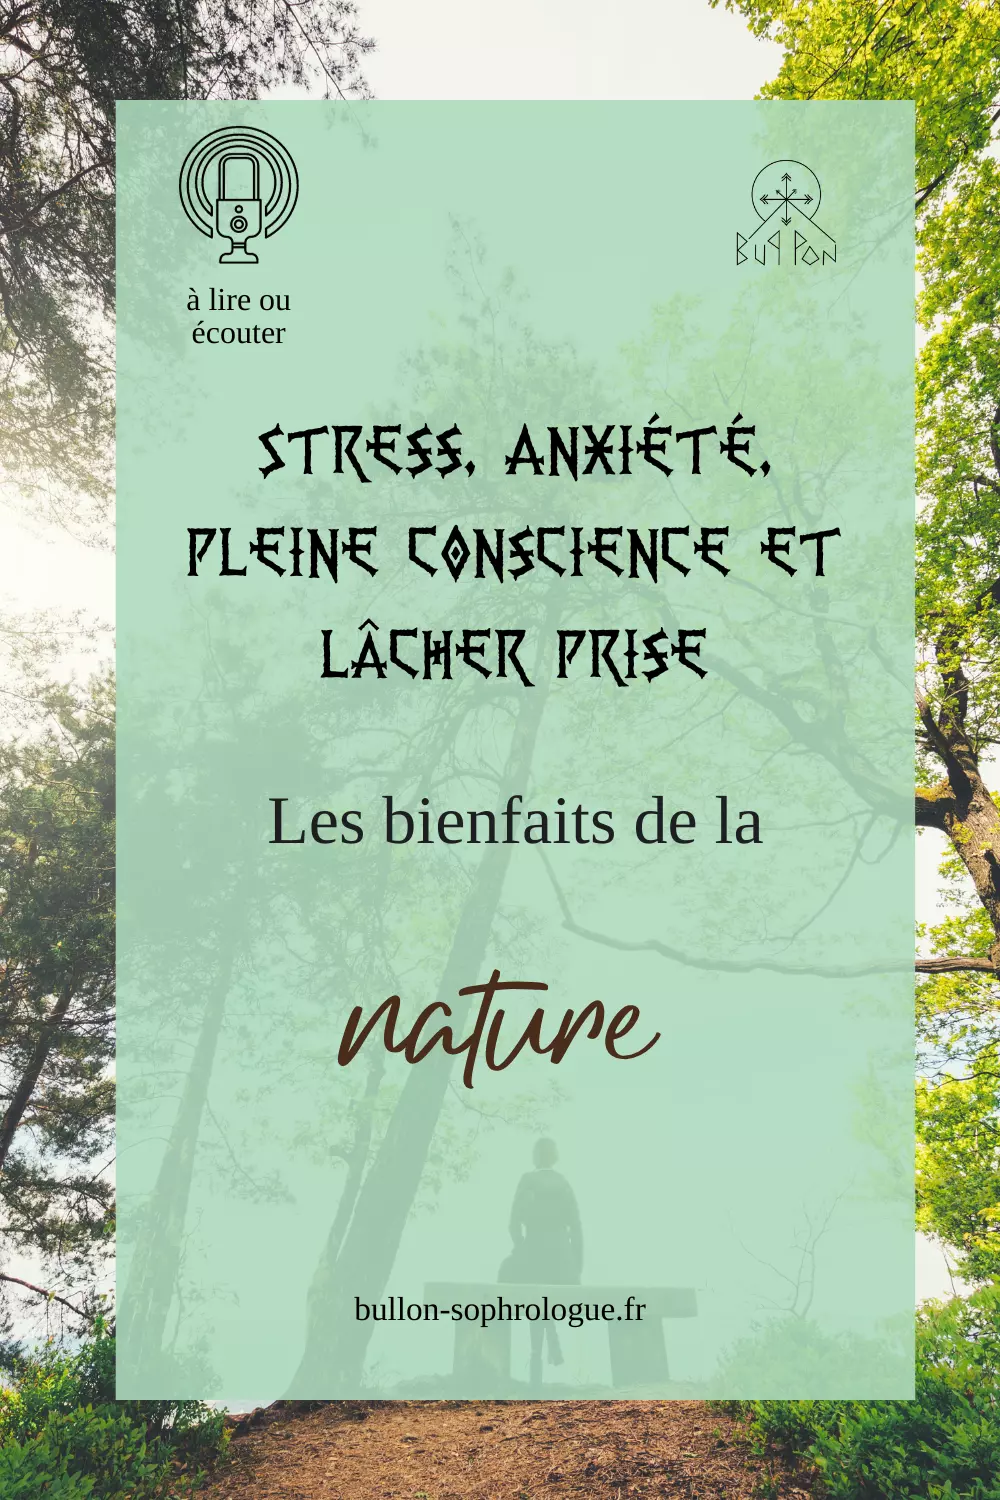 Stress, anxiété, pleine conscience et lâcher prise : les bienfaits de la nature avec bul-lon, sophrologue